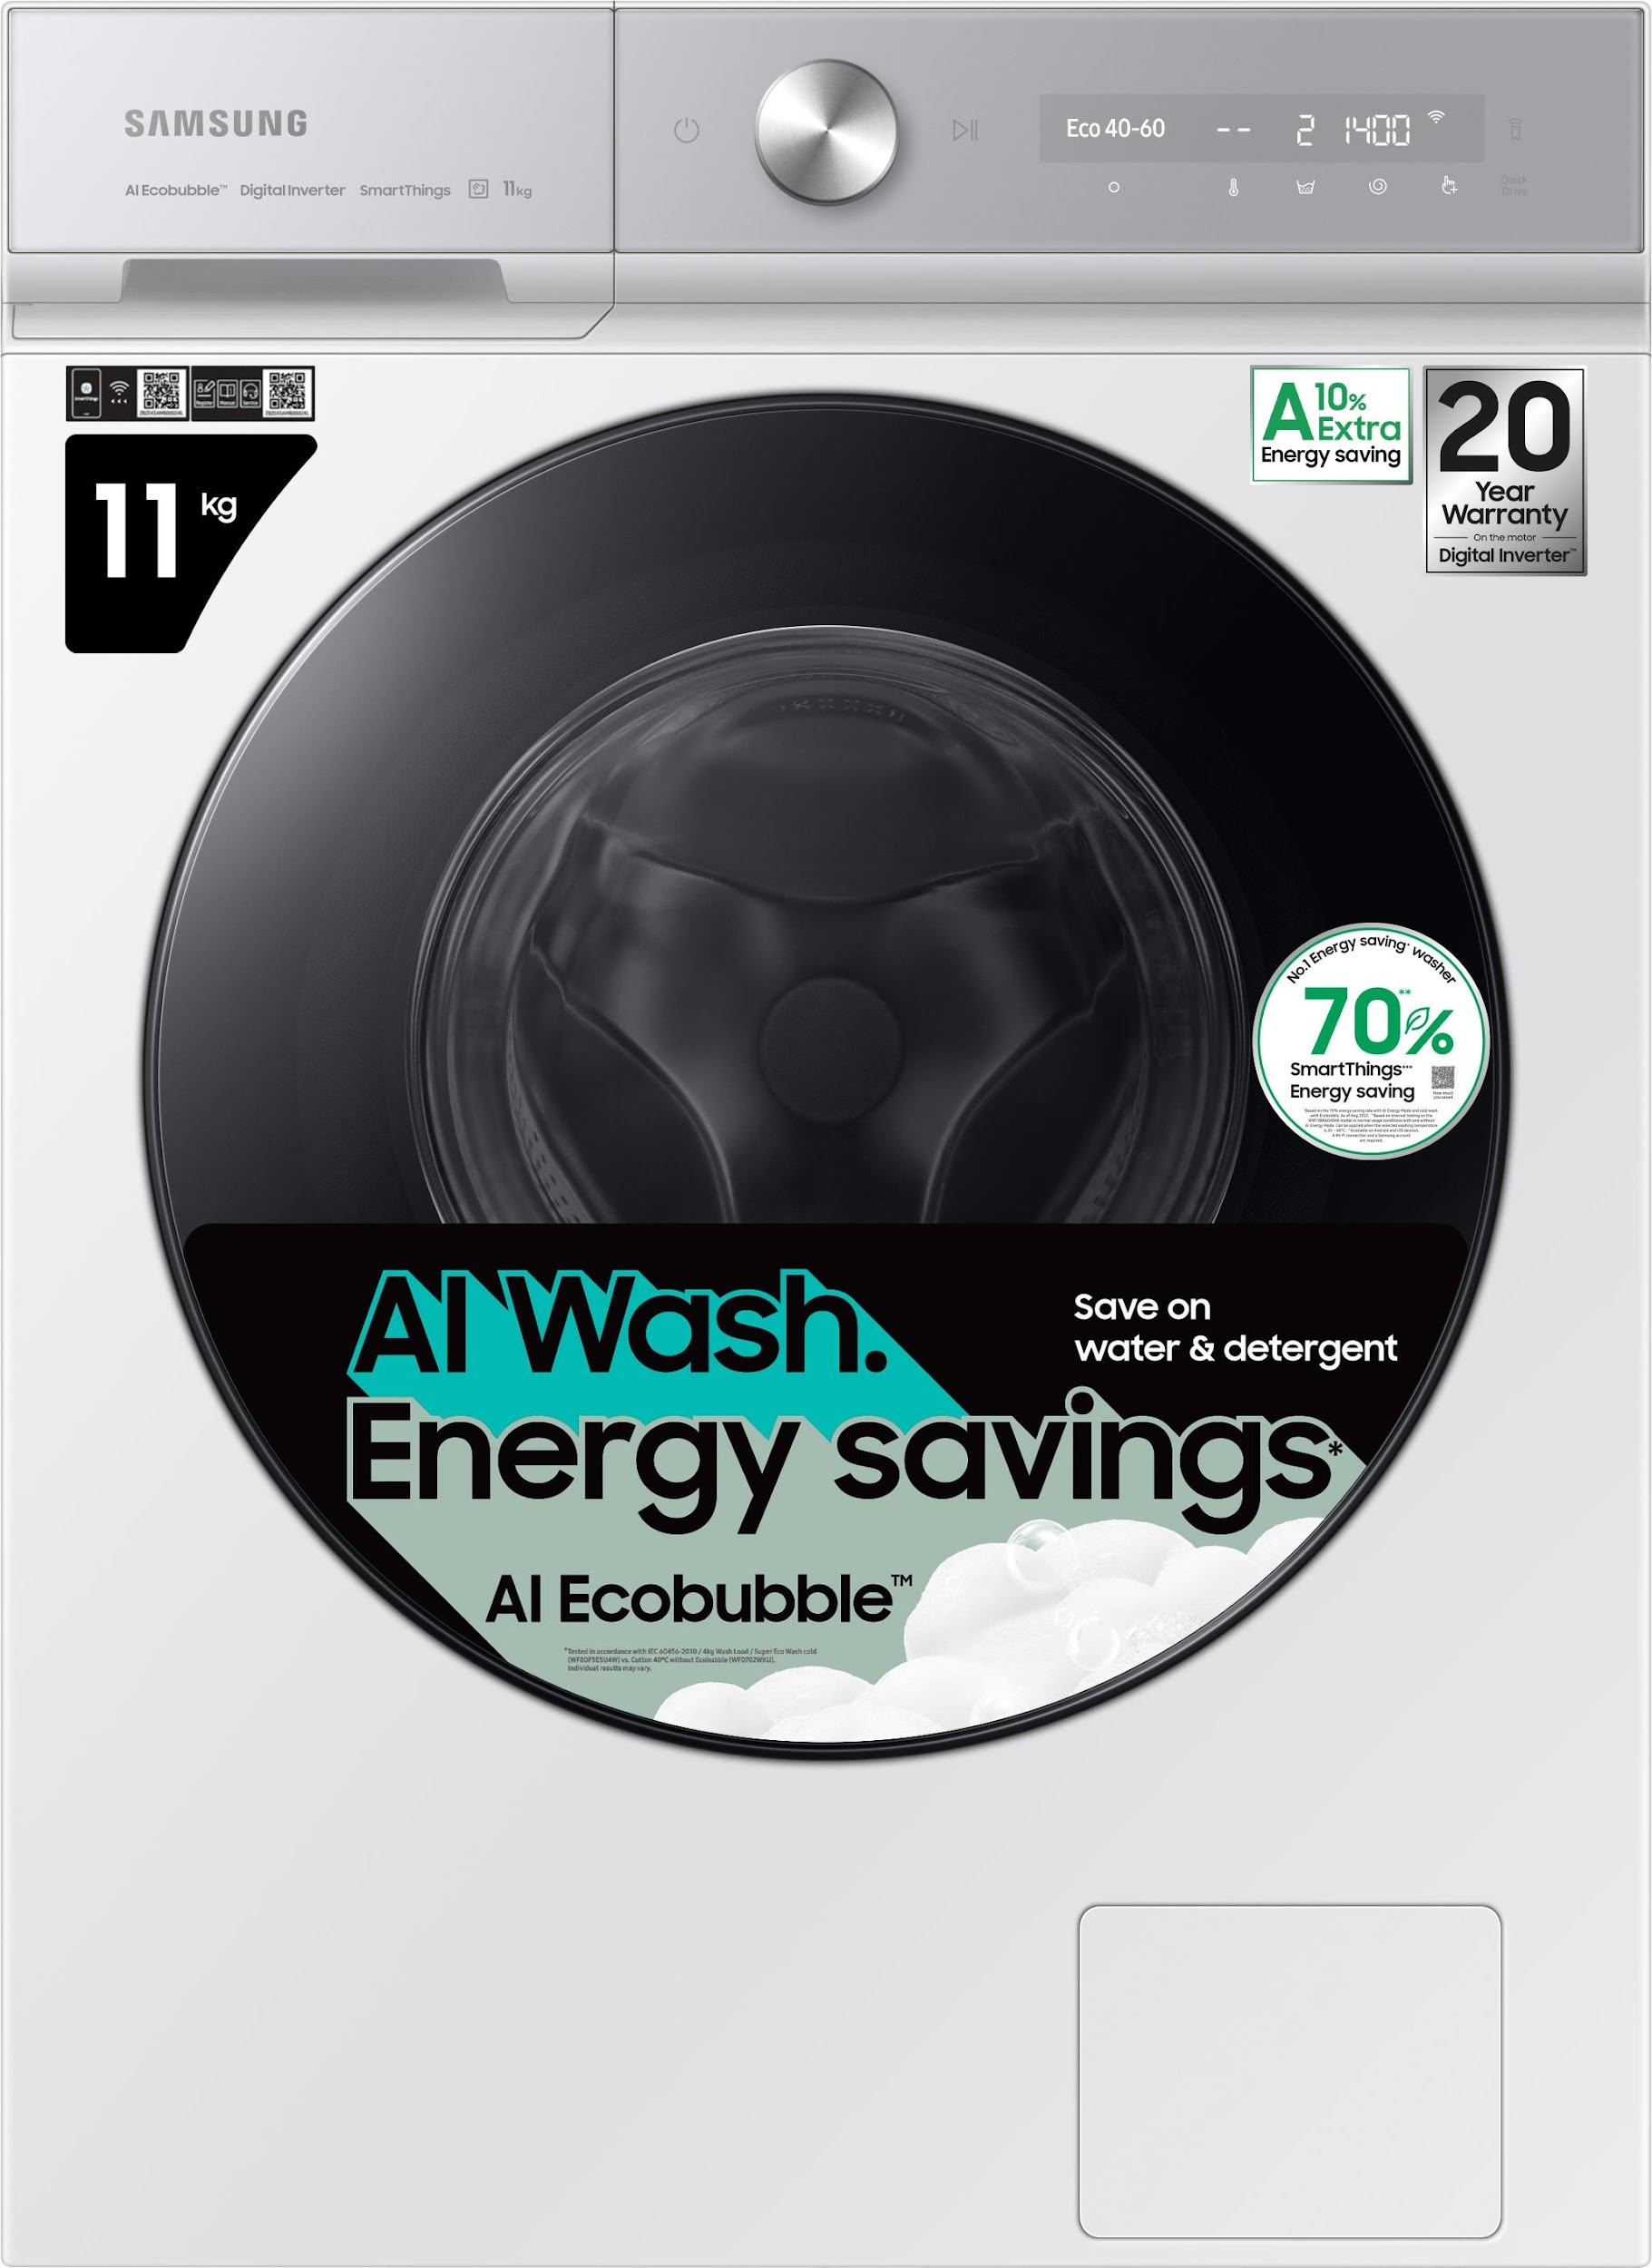 Foto de Samsung lleva el ahorro de energía al siguiente nivel, ofreciendo un 10% de ahorro de energía adicional